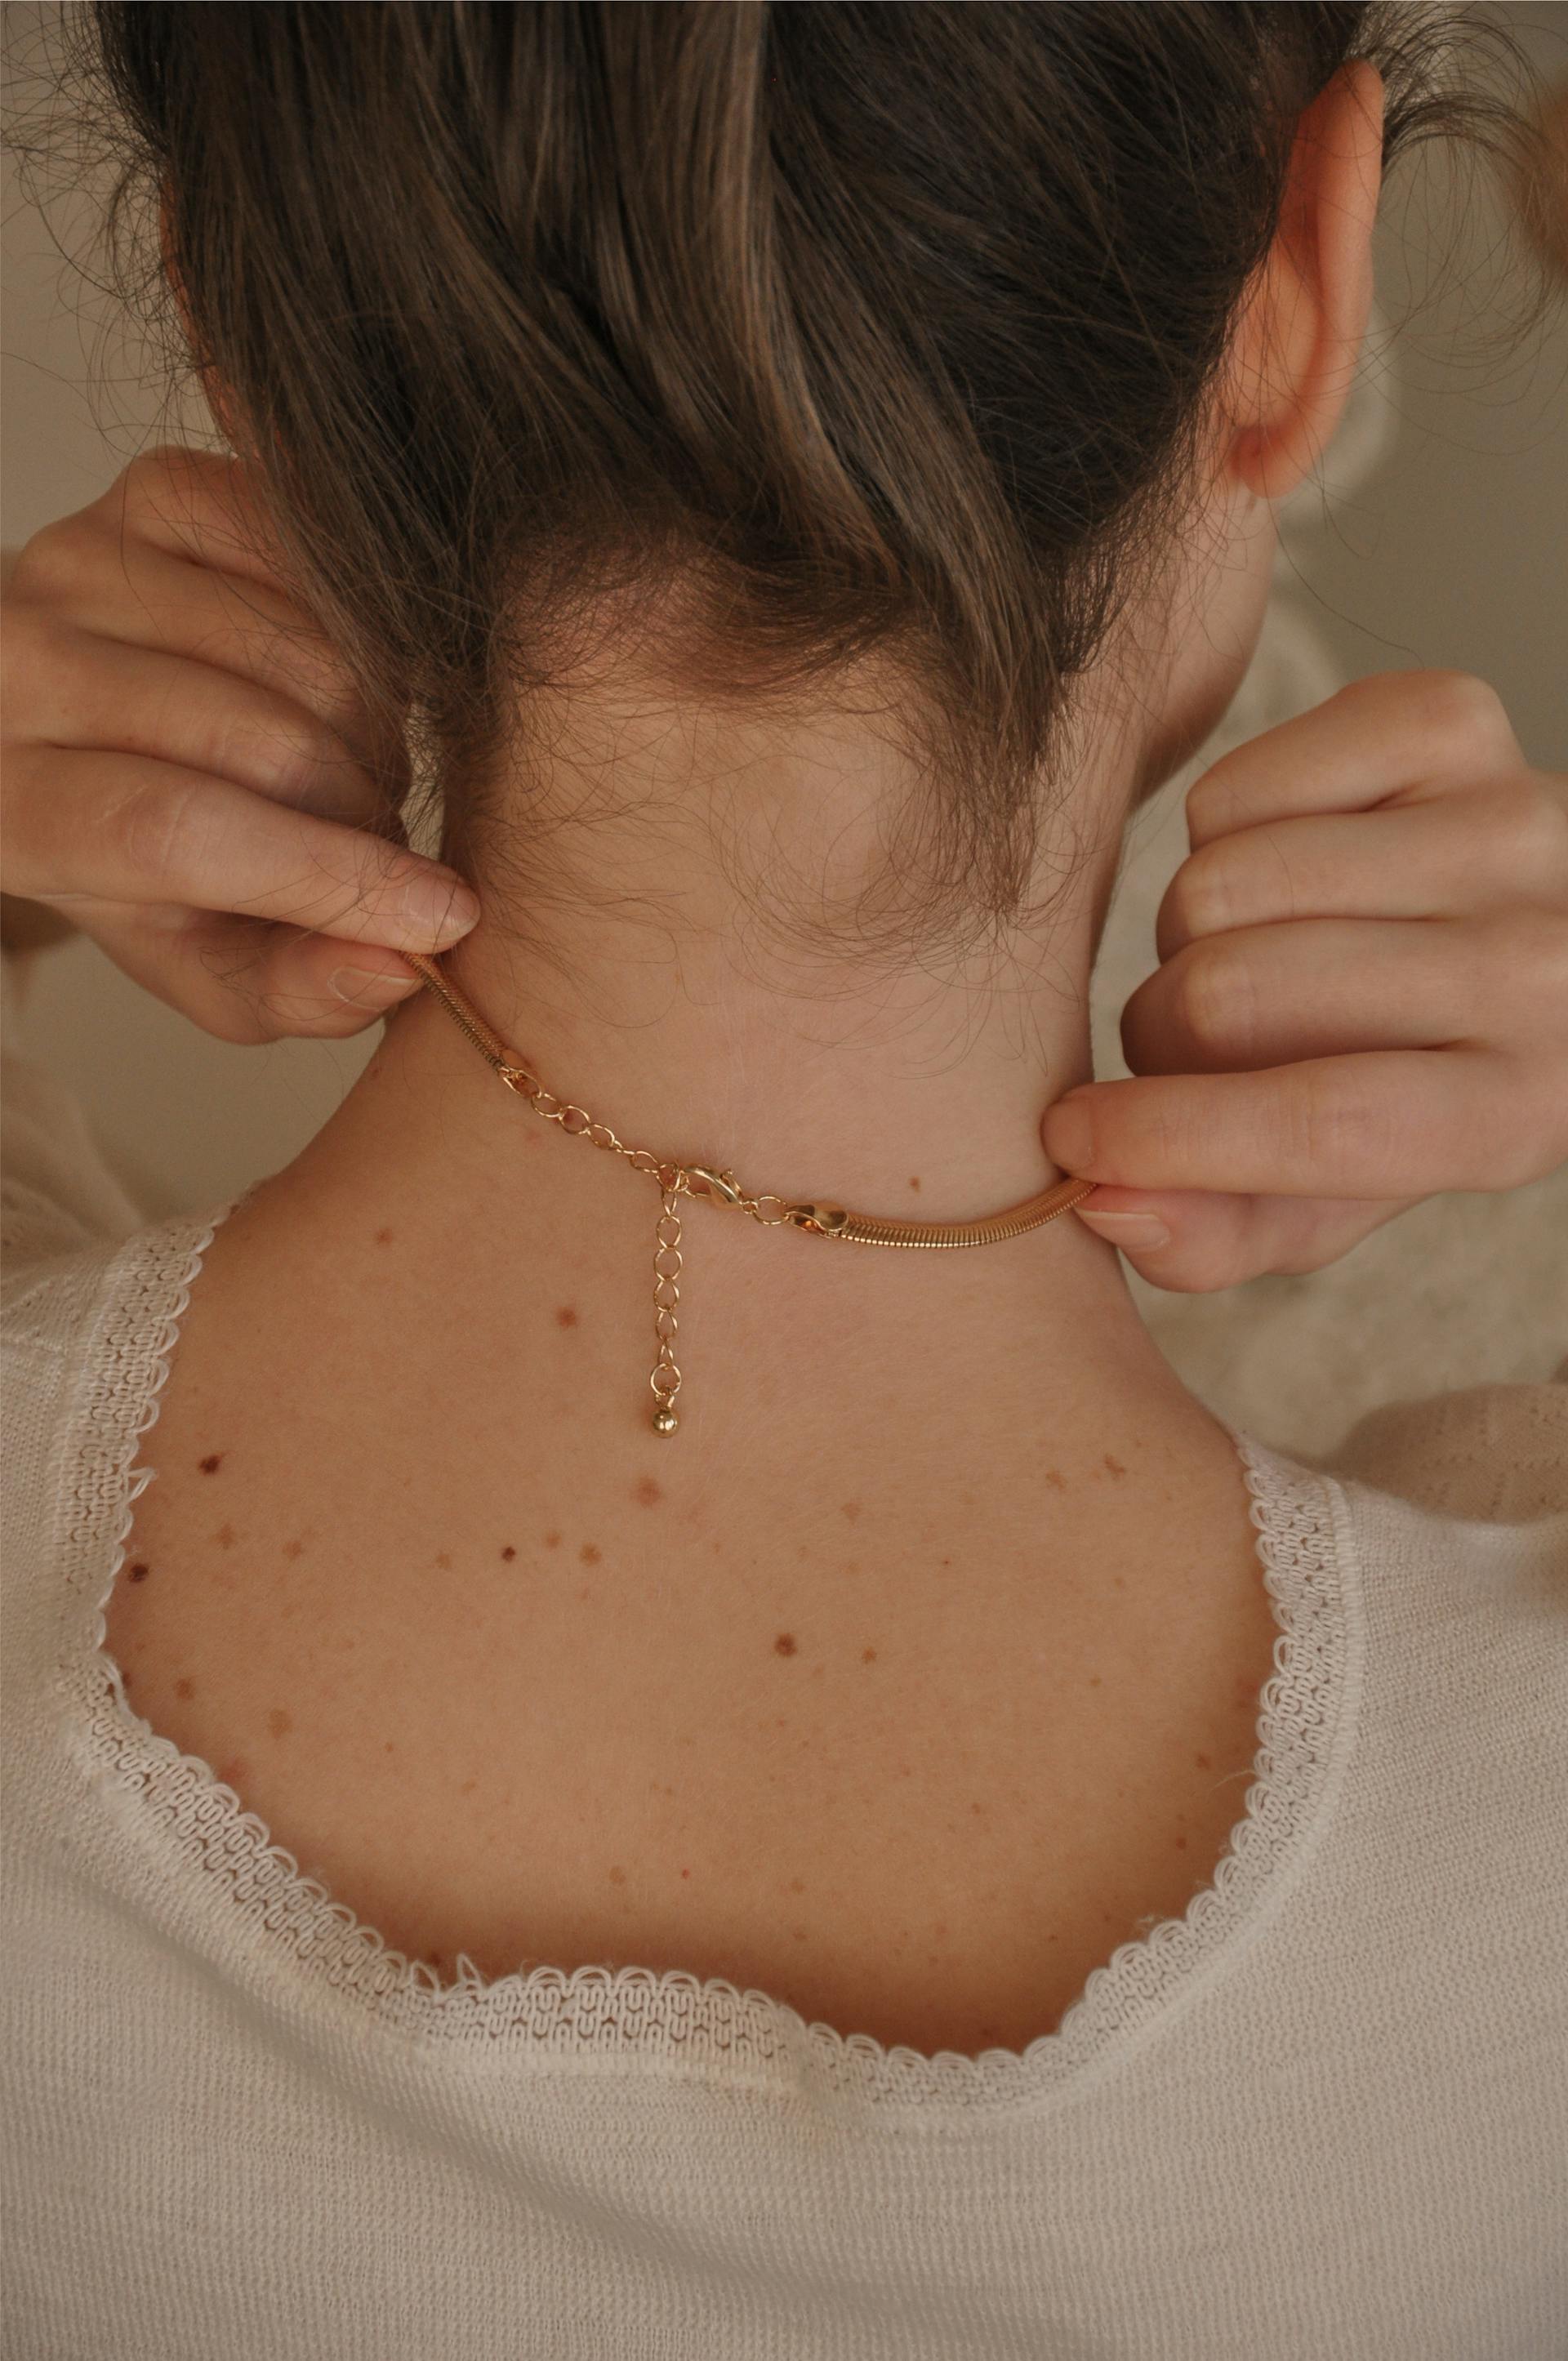 Rückansicht einer Frau, die ihre Halskette berührt | Quelle: Pexels